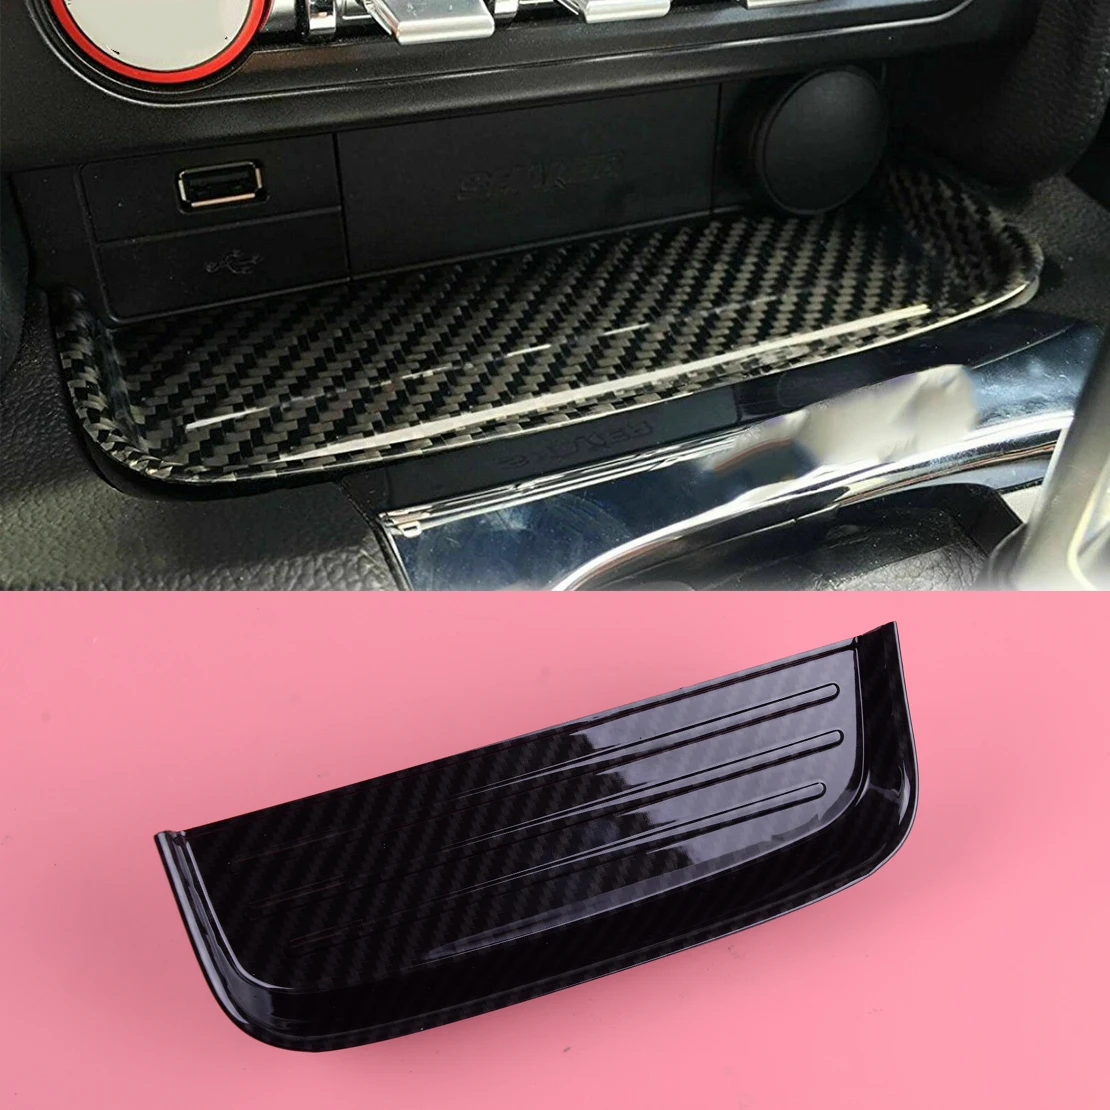 DWCX карбона и оптоволокна для телефона ABS салон автомобиля центр изменить монет лоток коробка держатель подходит для Ford Mustang